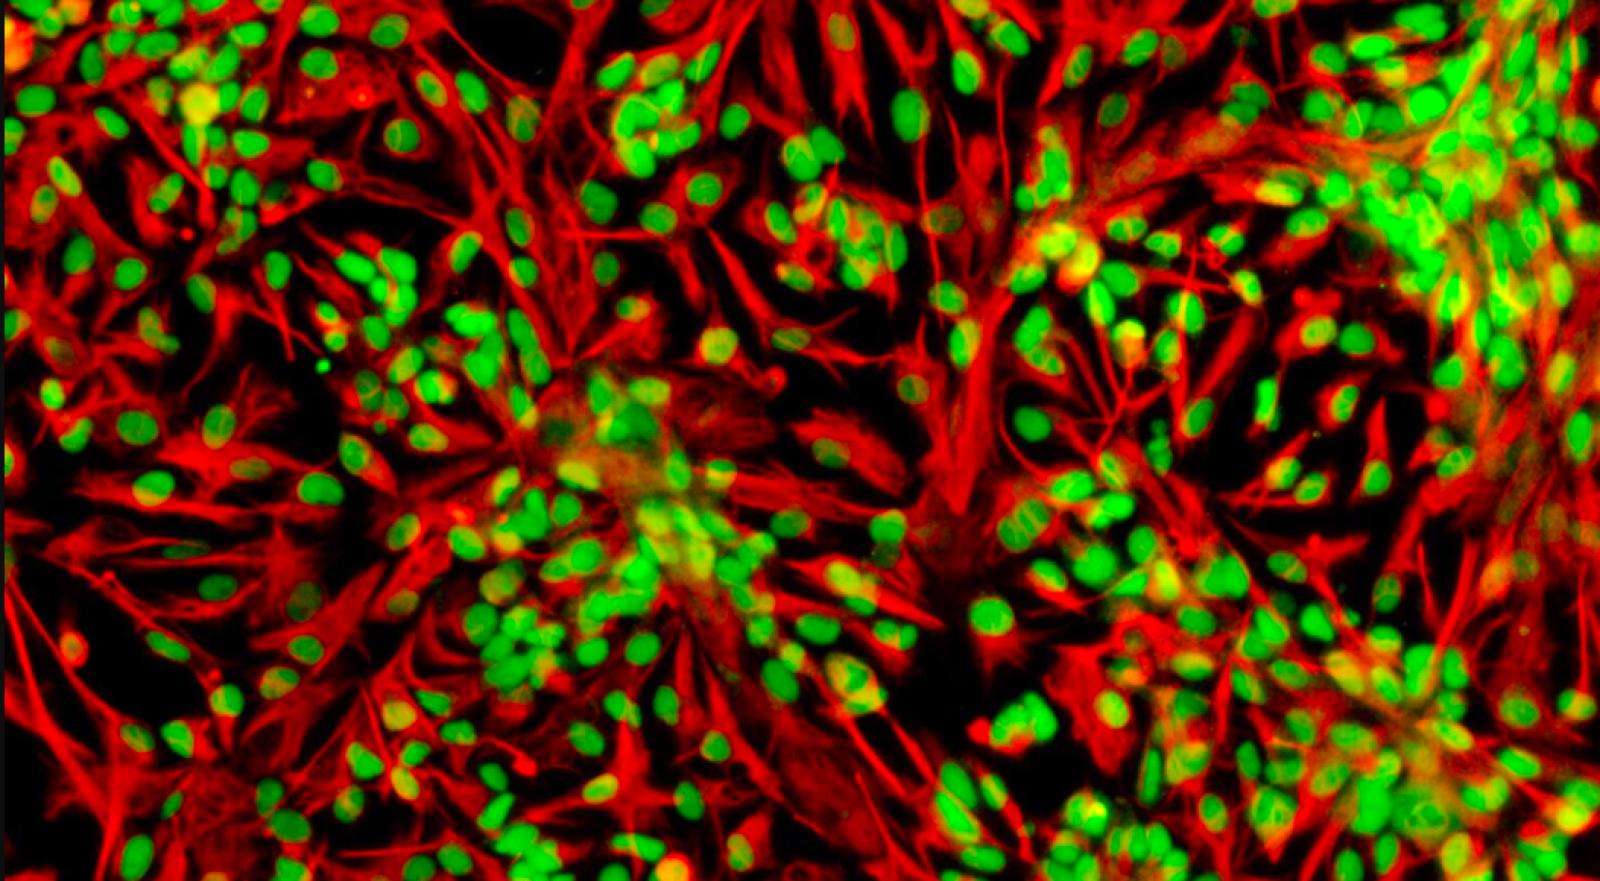 Immagine al microscopio di cellule staminali neurali umane, marcate per la proteina Sox2 (in verde, contenuta all'interno del nucleo) e la proteina vimentina (in rosso, proteina strutturale del corpo della cellula)